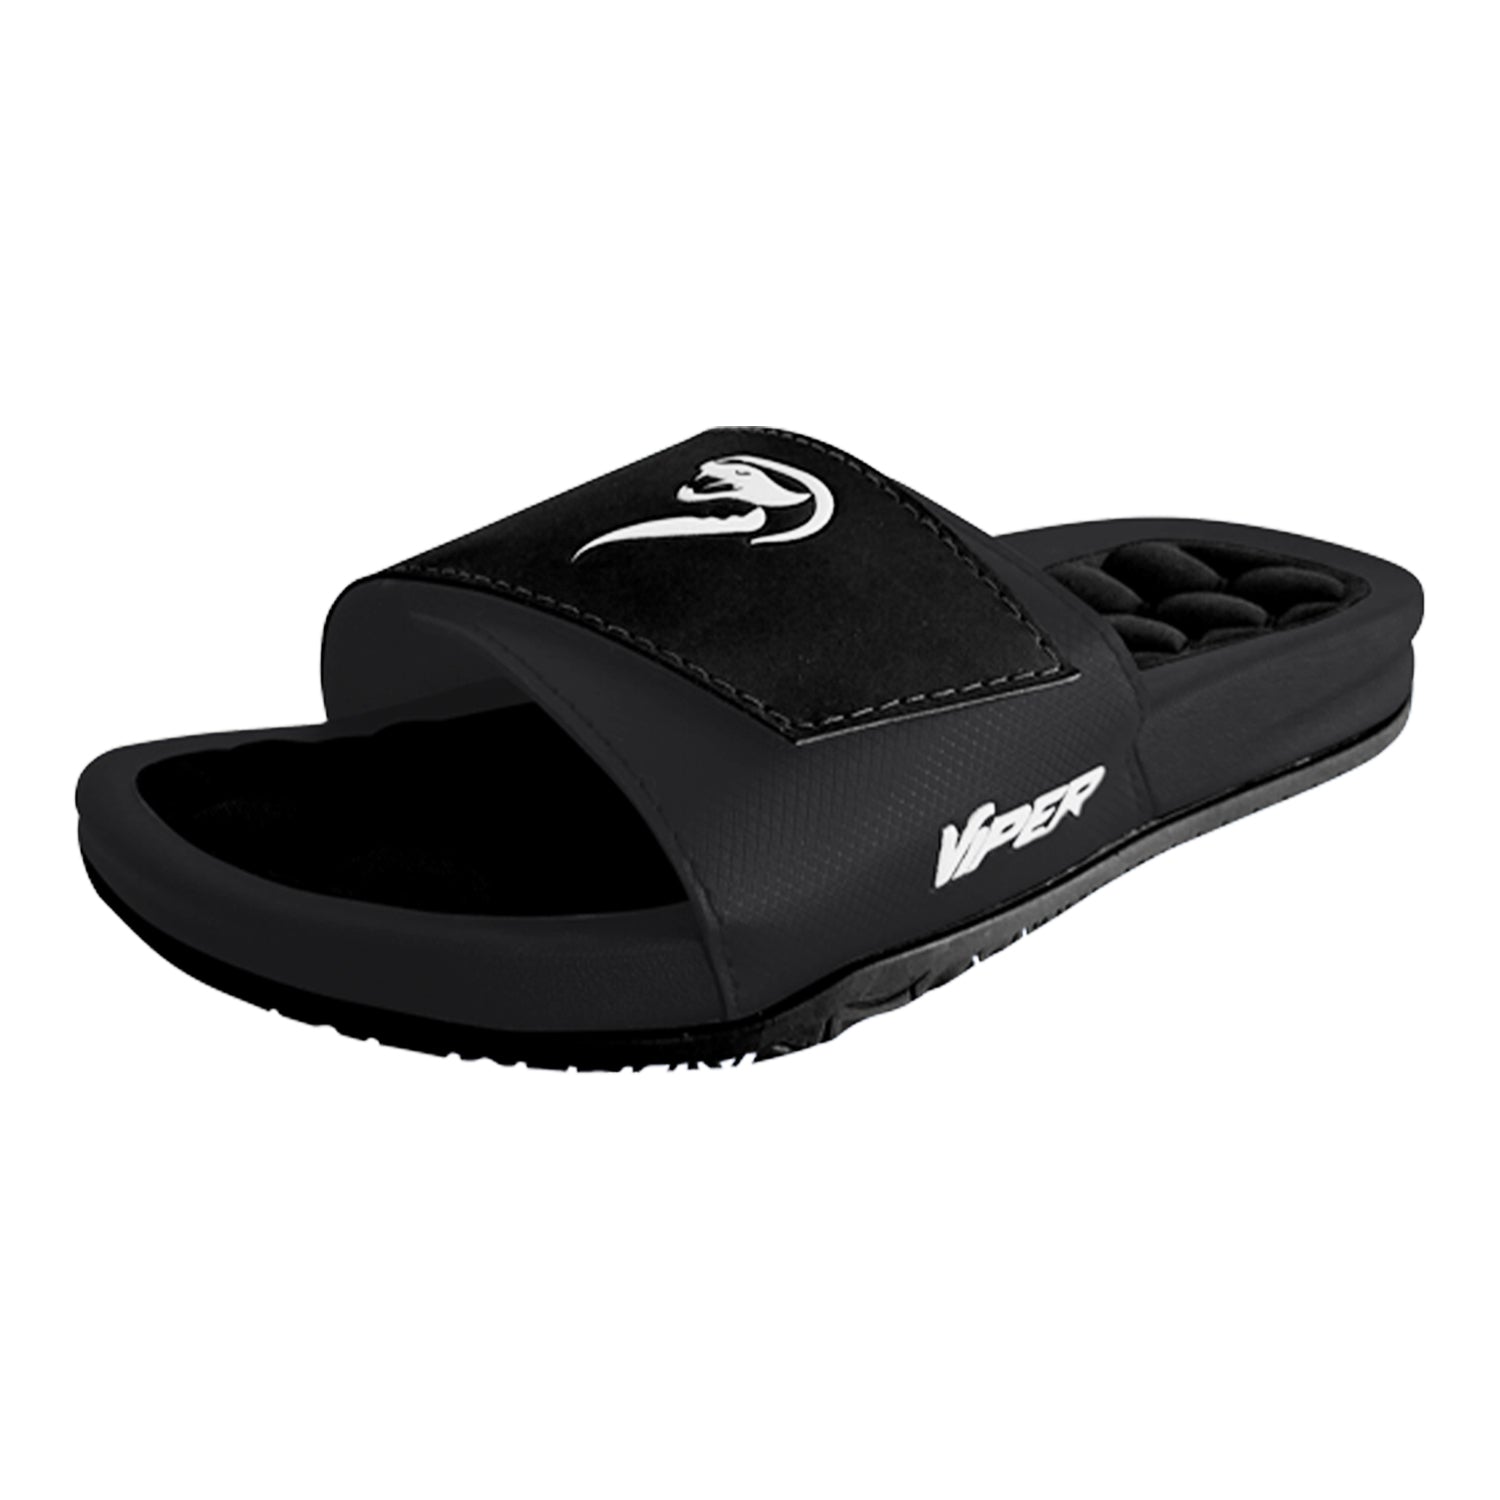 Viper Ultralight Slides (Black)